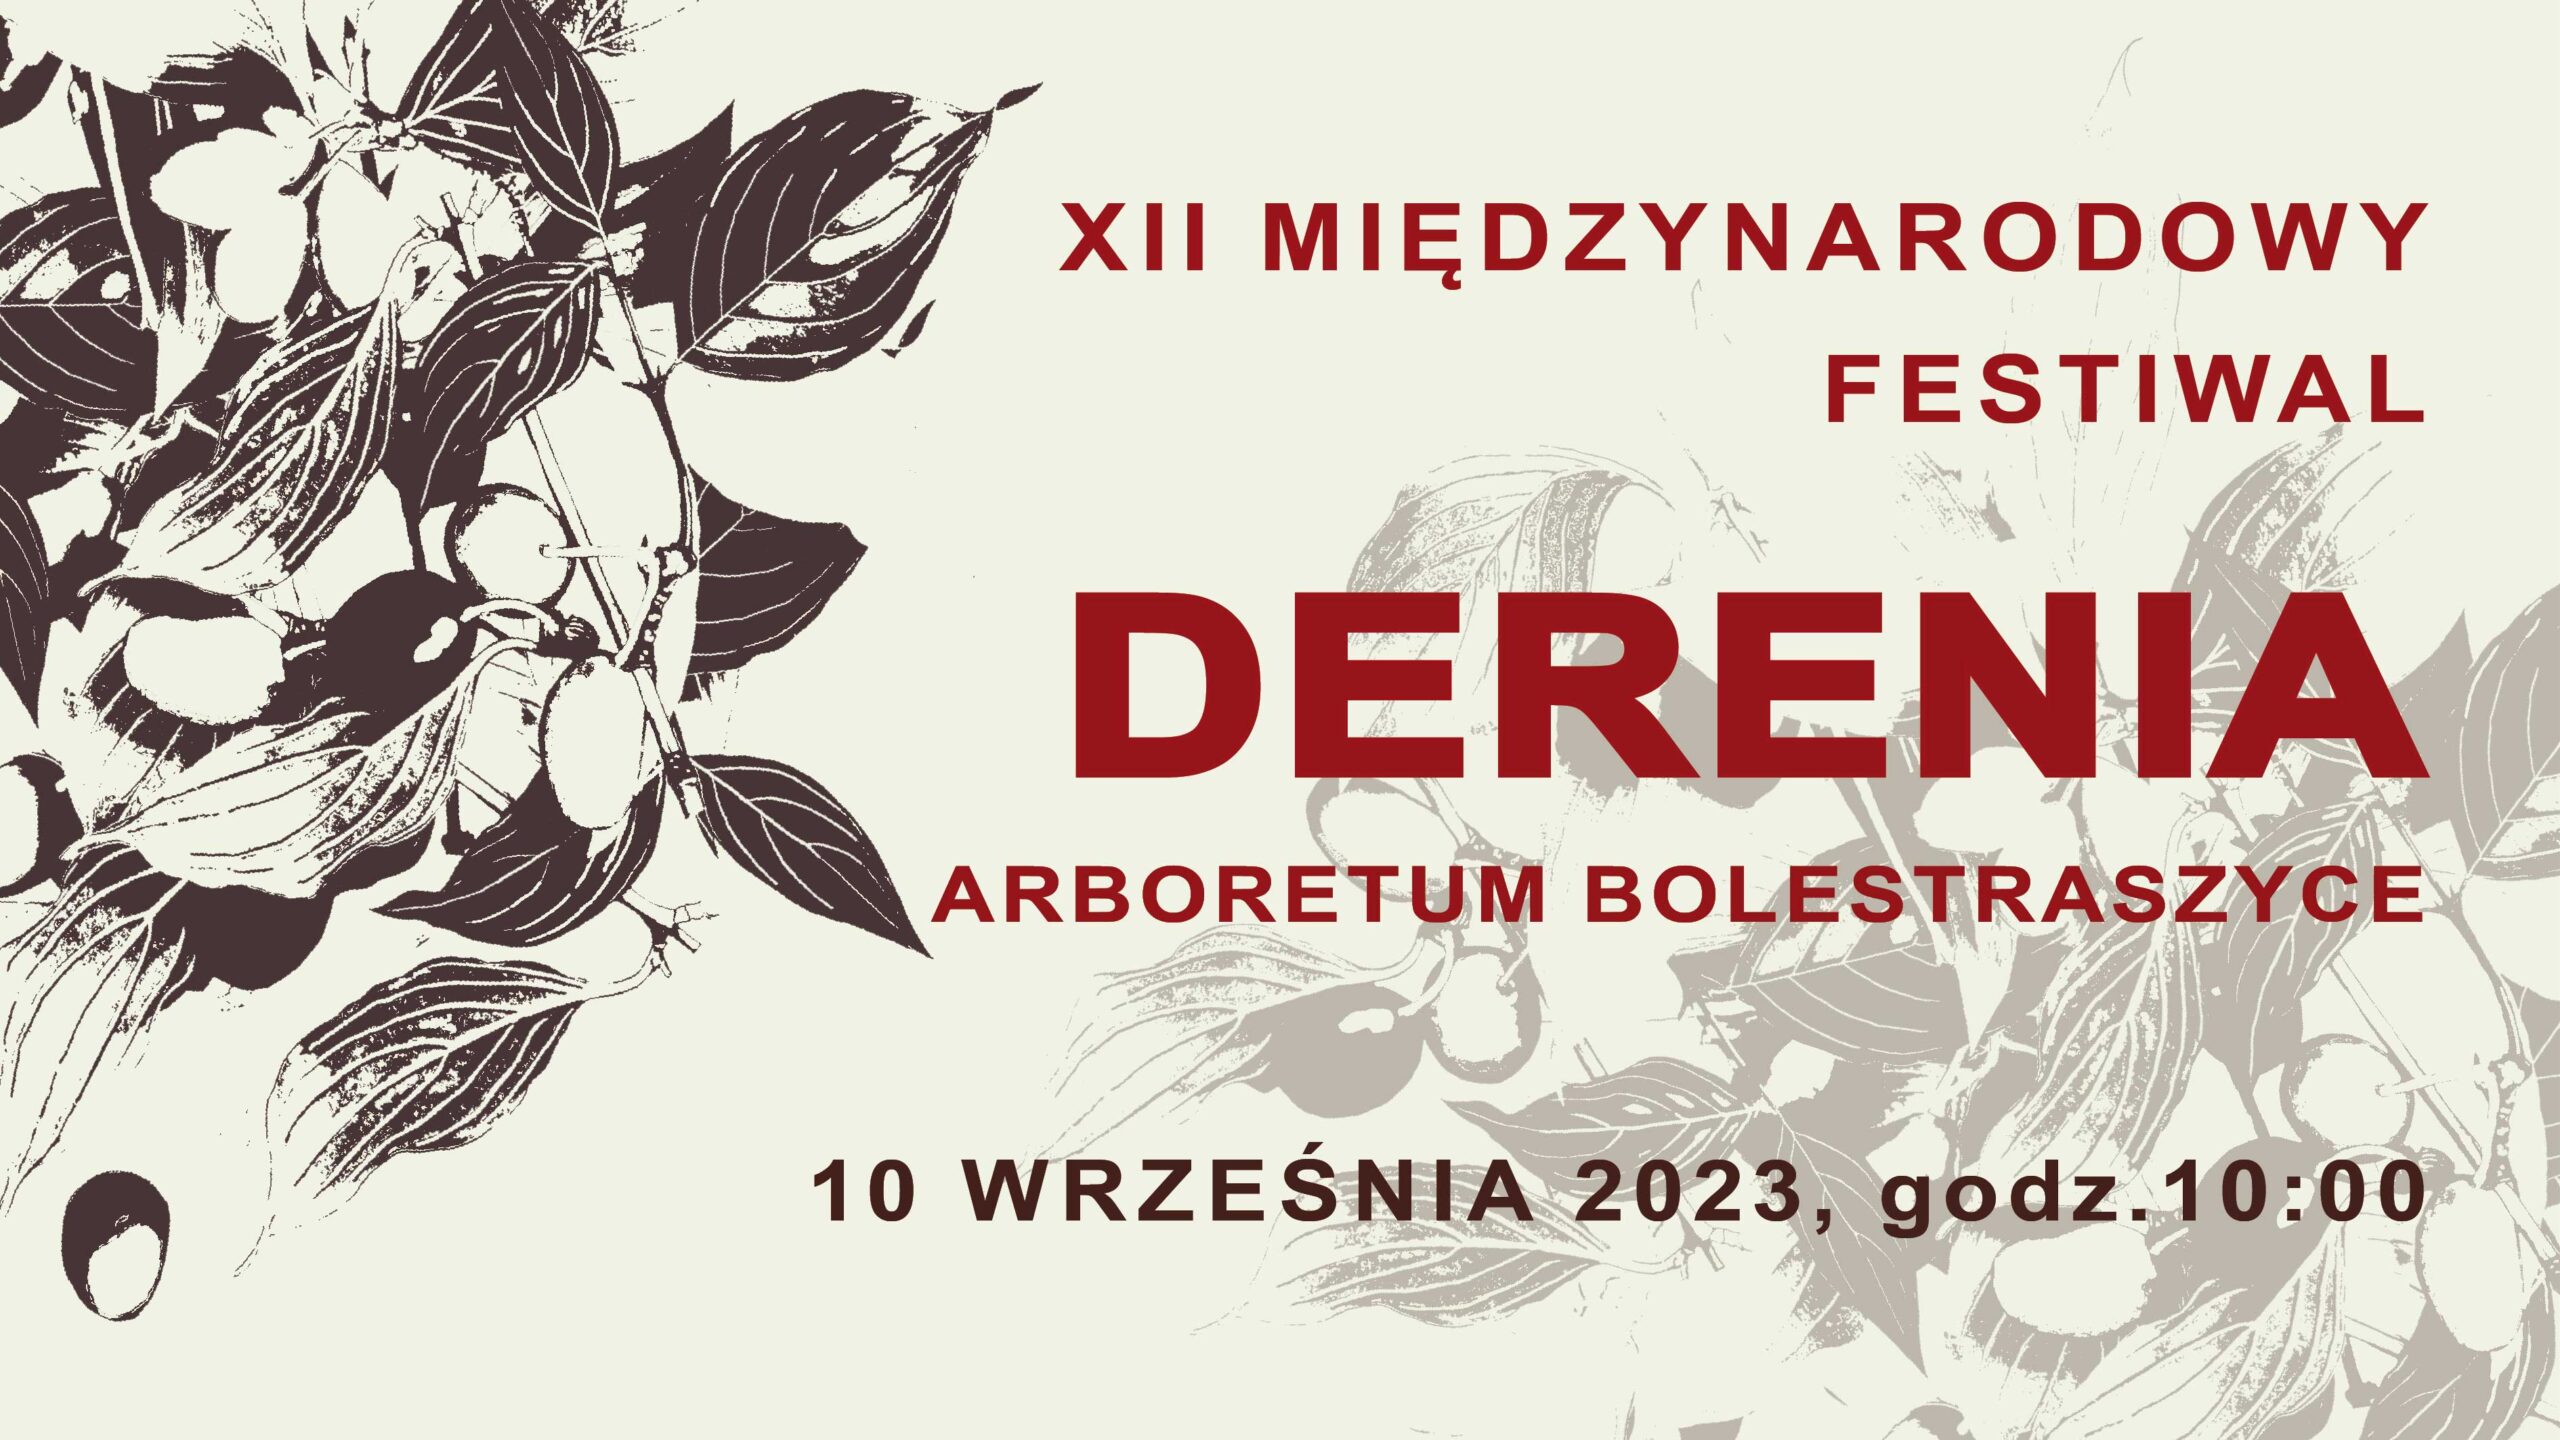 Festiwal Derenia 72 dpi scaled